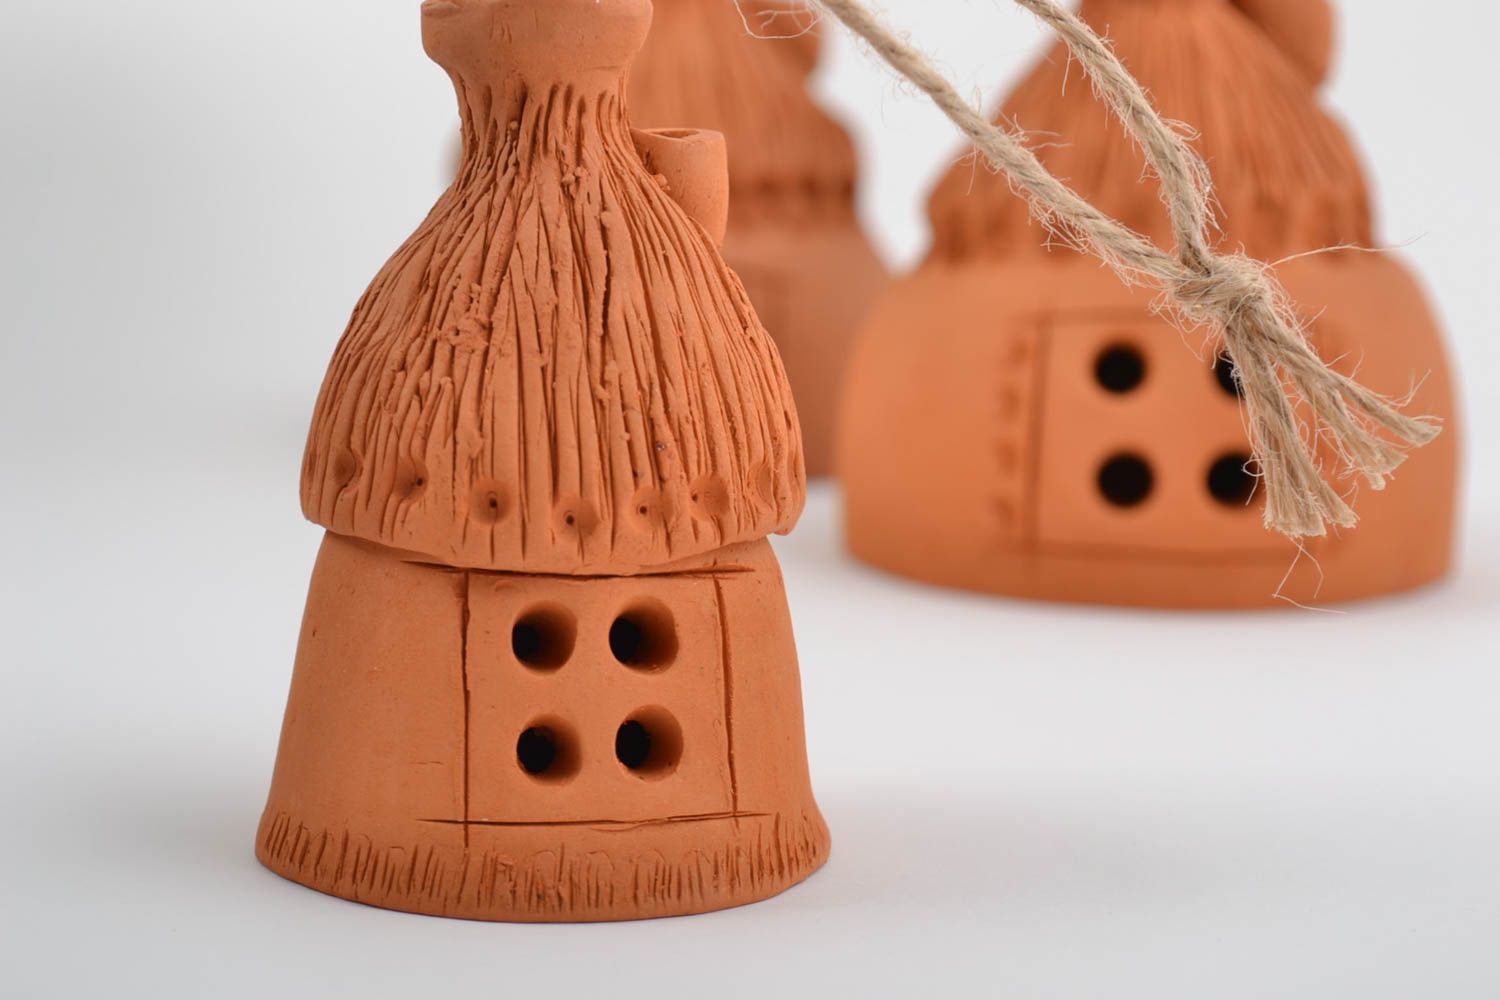 Авторские керамические колокольчики набор из трех изделий домики хэнд мейд  фото 3